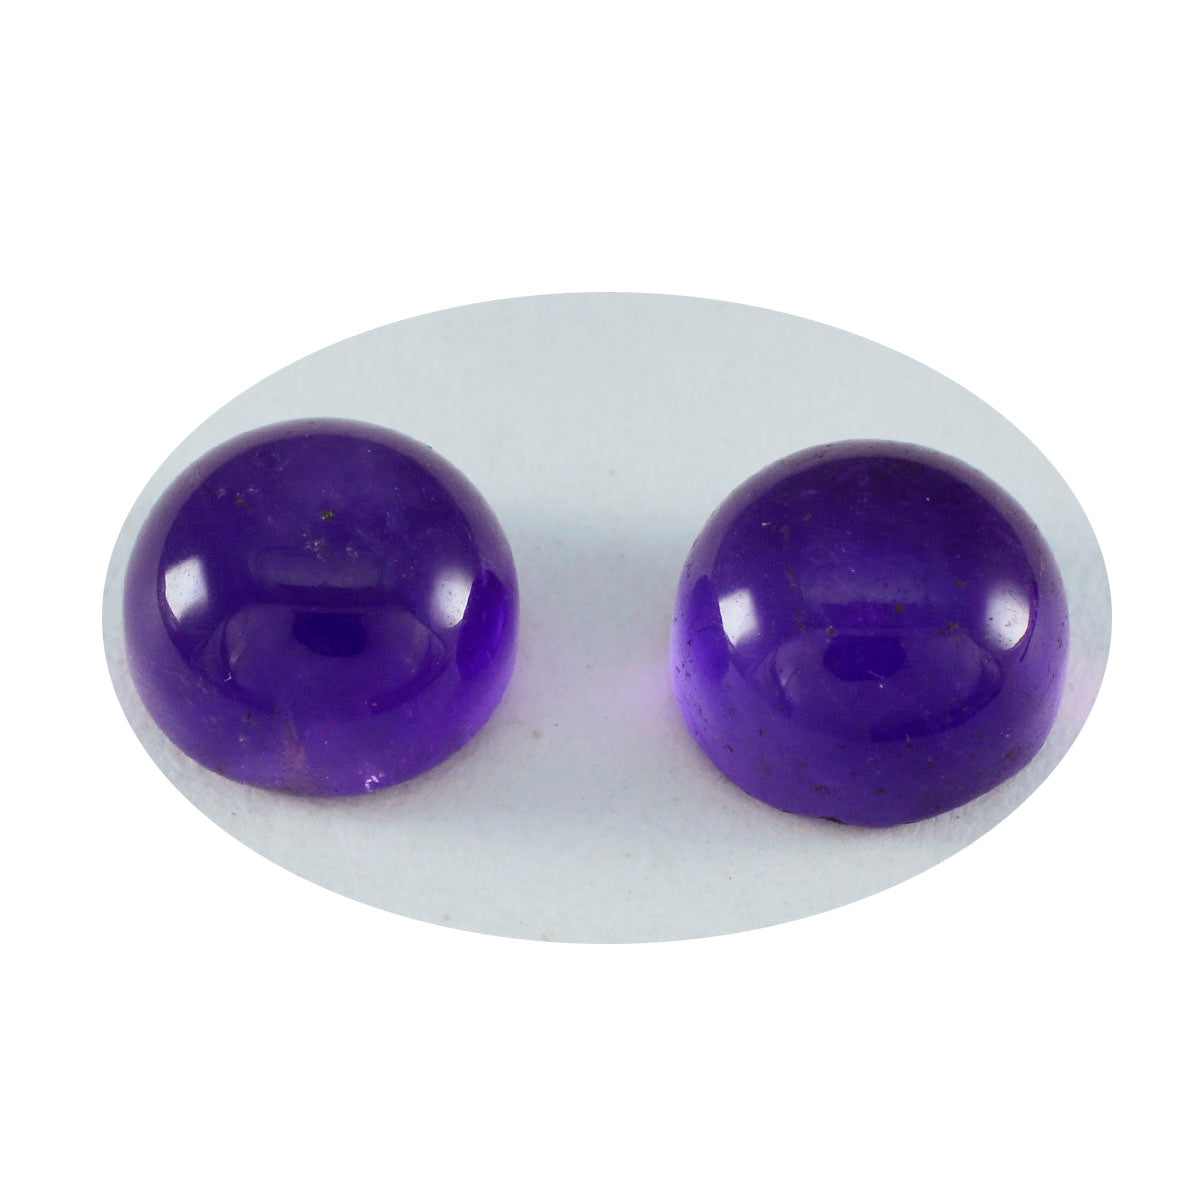 Riyogems 1PC Purple Amethyst Cabochon 9X9 mm Round Shape A Quality Gems